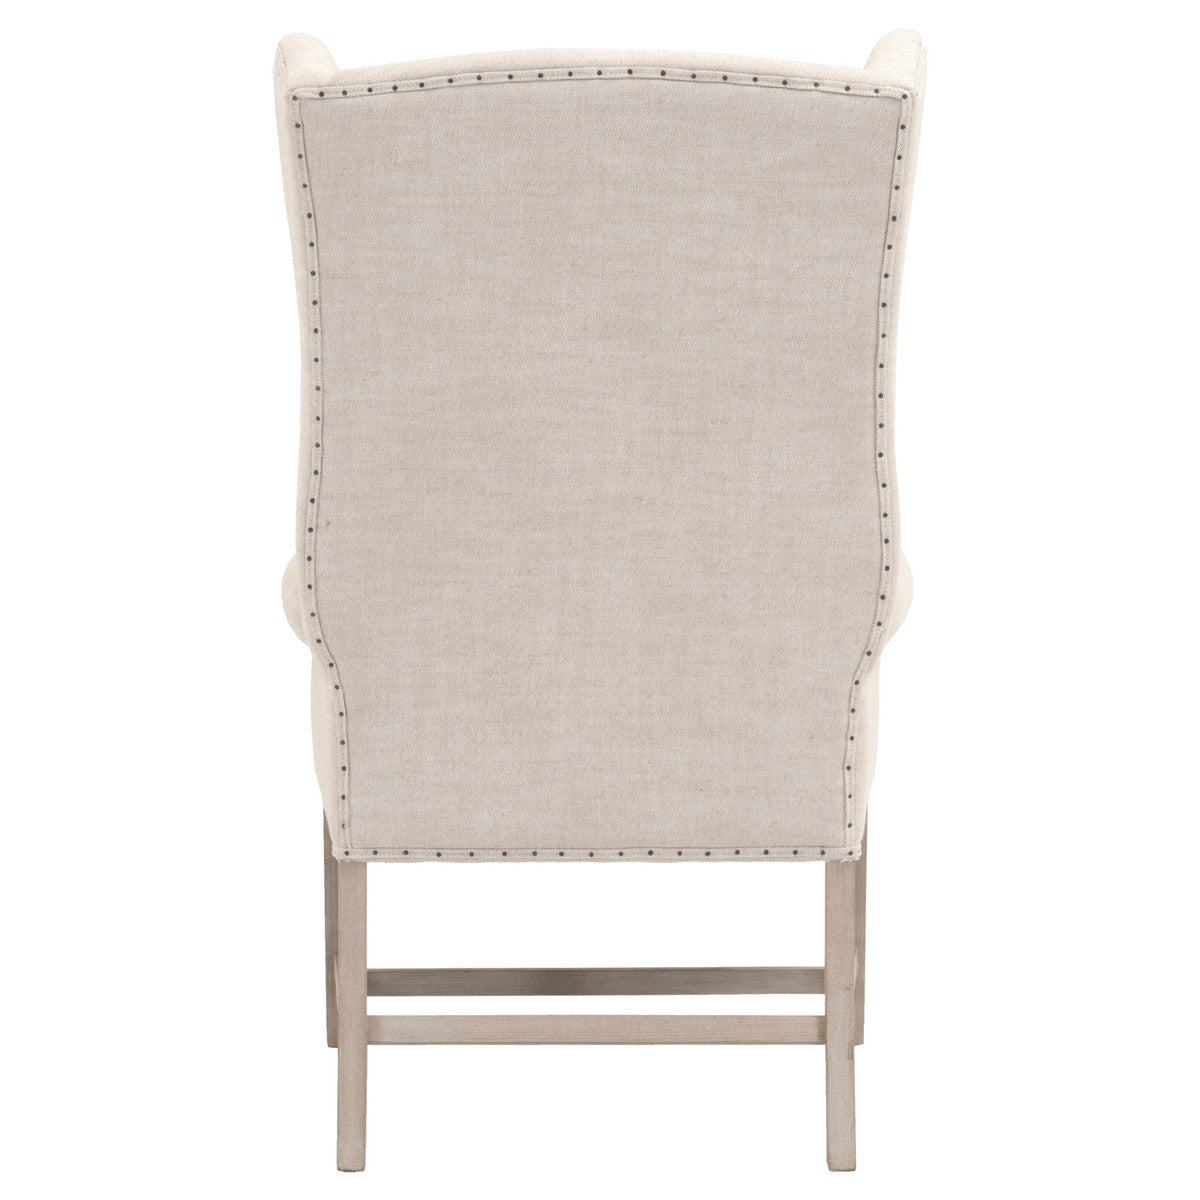 Campden Arm Chair